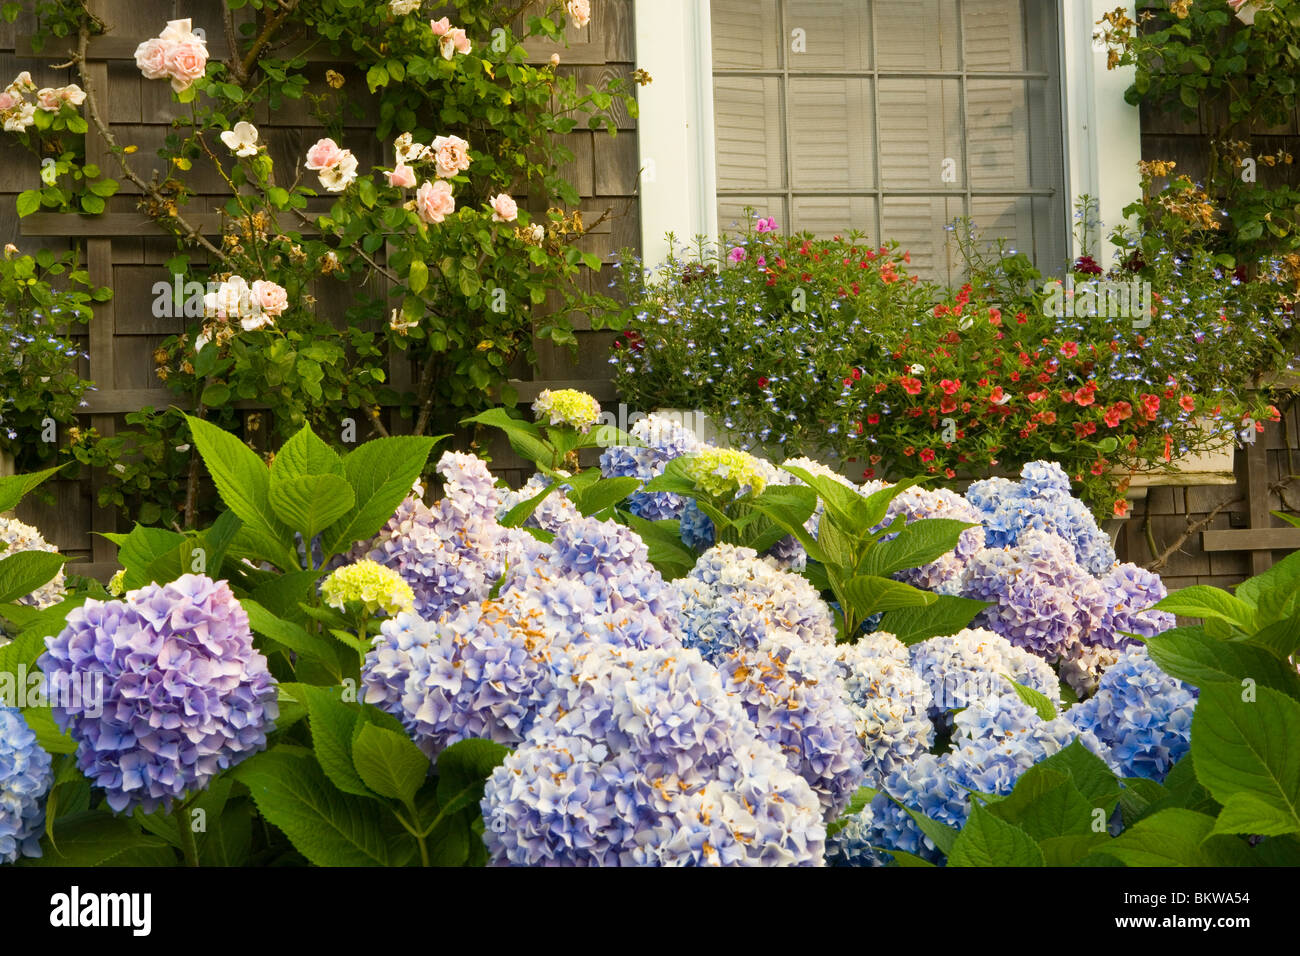 Hydrangea and Nantucket garden. Stock Photo